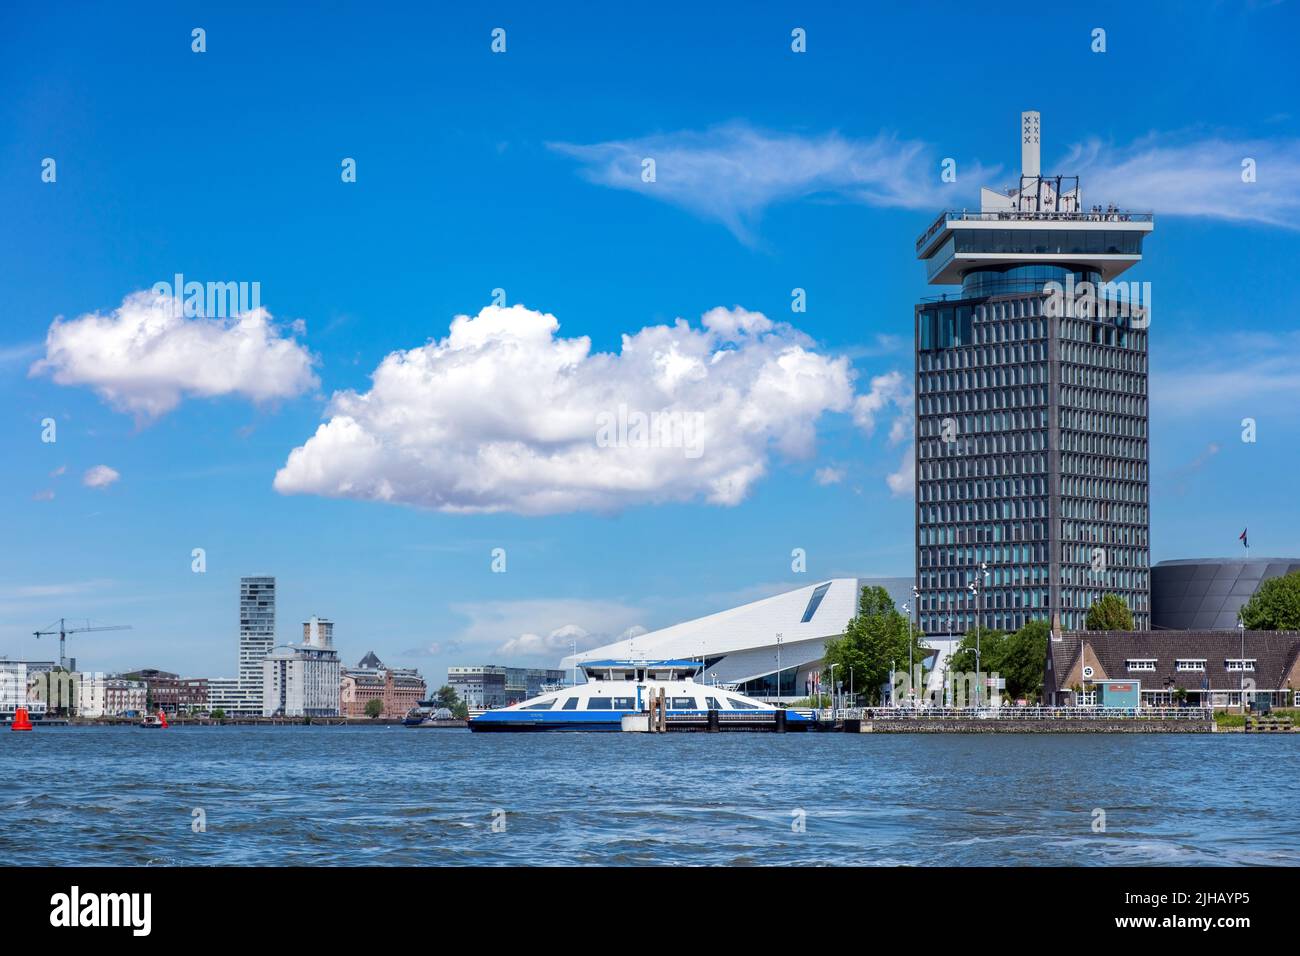 Eye Filmmuseum Amsterdam, moderner Wolkenkratzer, Filmarchiv und Kino, Holland Niederlande. Hochhaus am Wasser, blauer Himmel im Hintergrund. Stockfoto